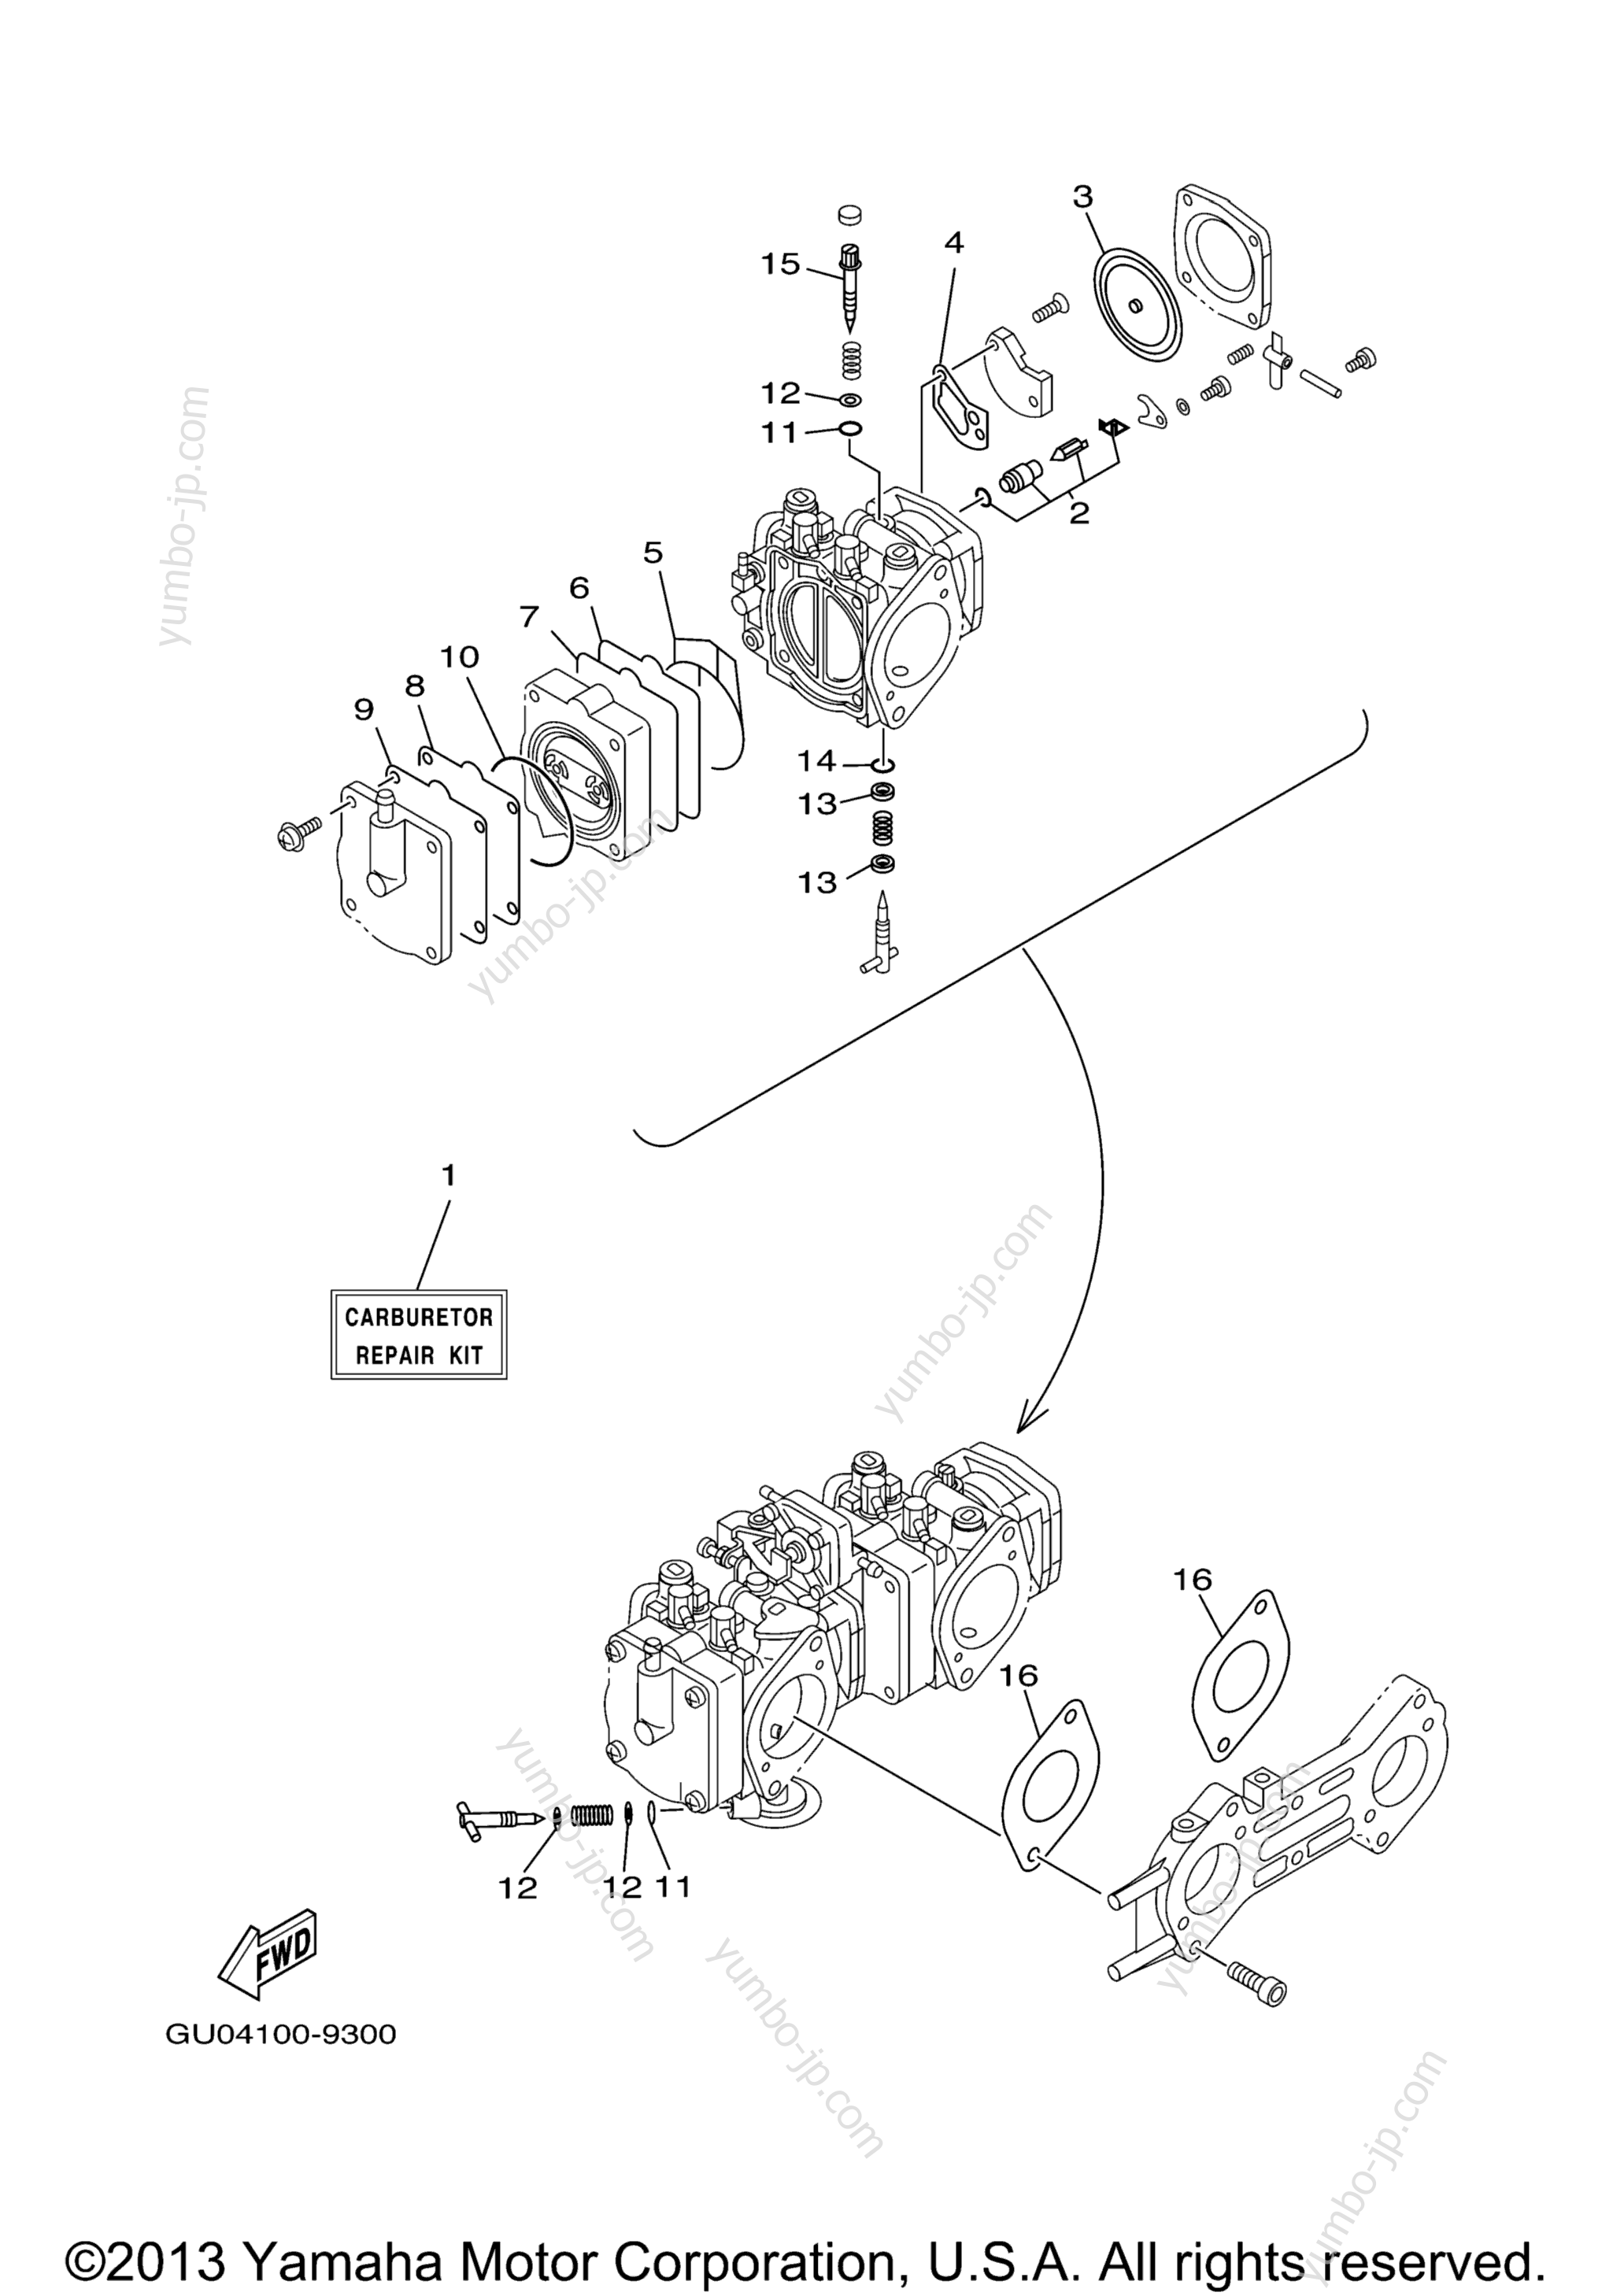 Repair Kit 2 для гидроциклов YAMAHA GP800R (GP800AC) 2004 г.